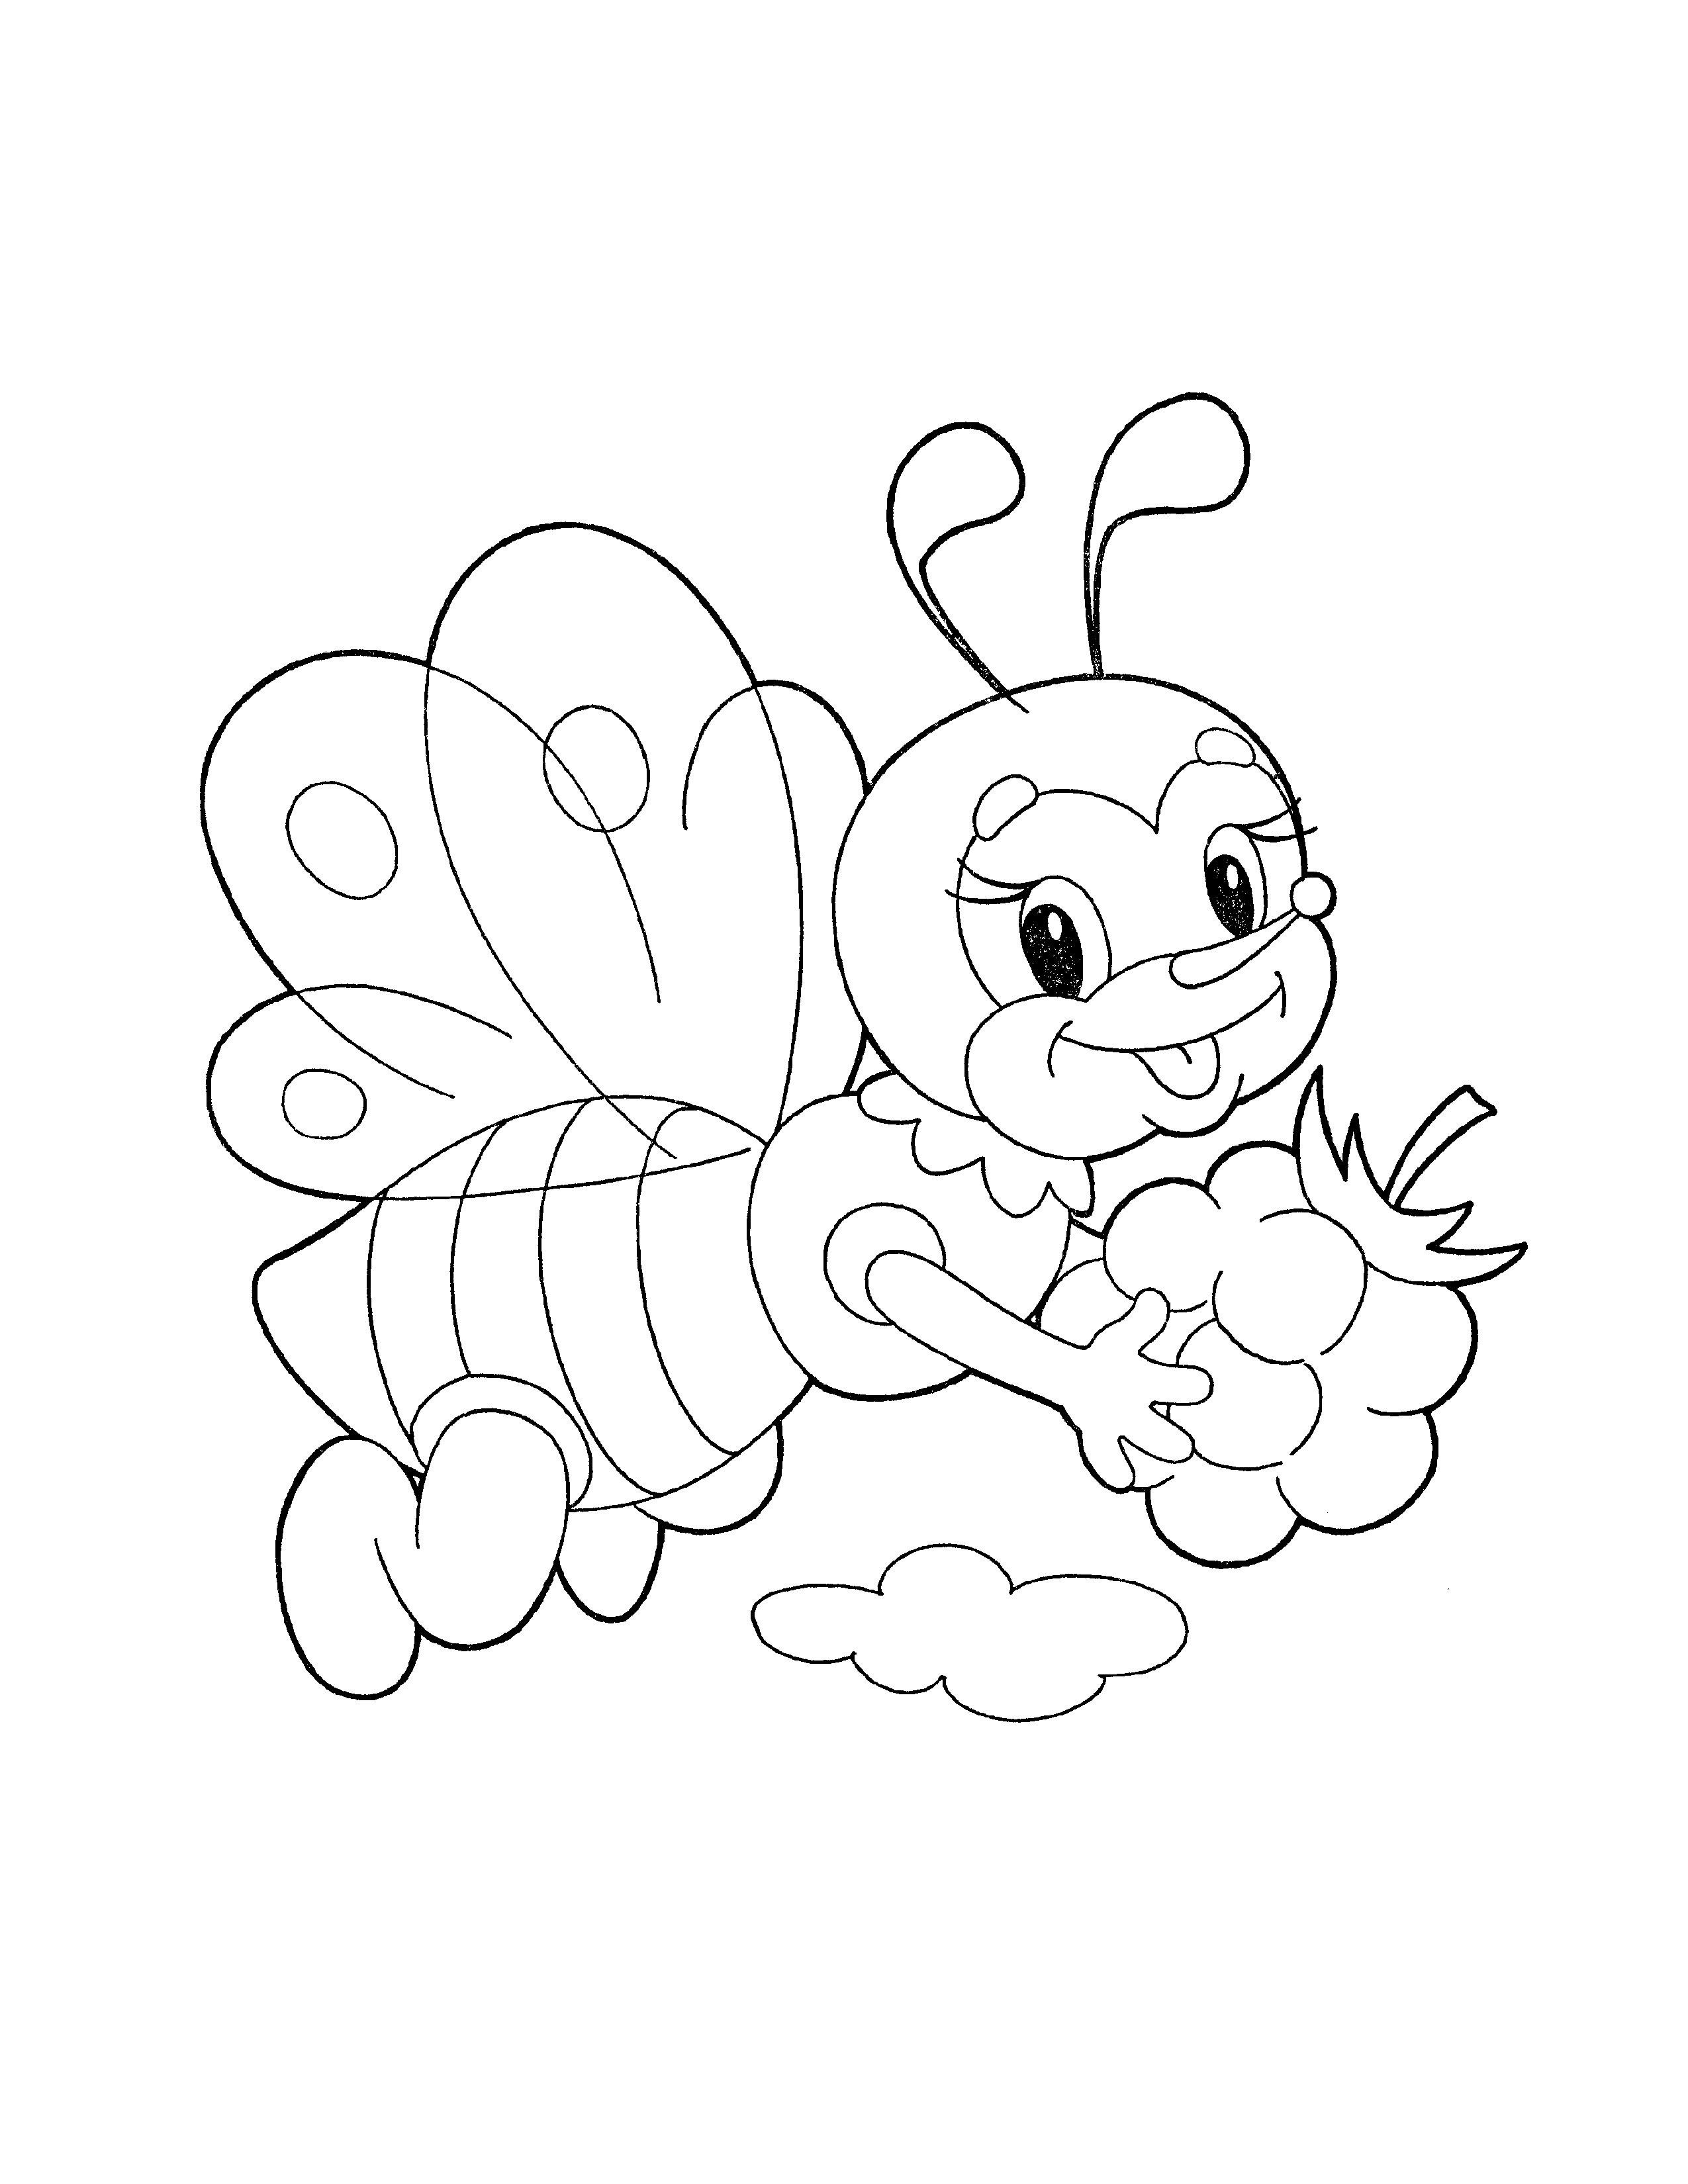 Пчелка раскраска распечатать. Раскраска пчёлка для детей. Пчела раскраска. Пчелка раскраска для малышей. Пчела раскраска для малышей.